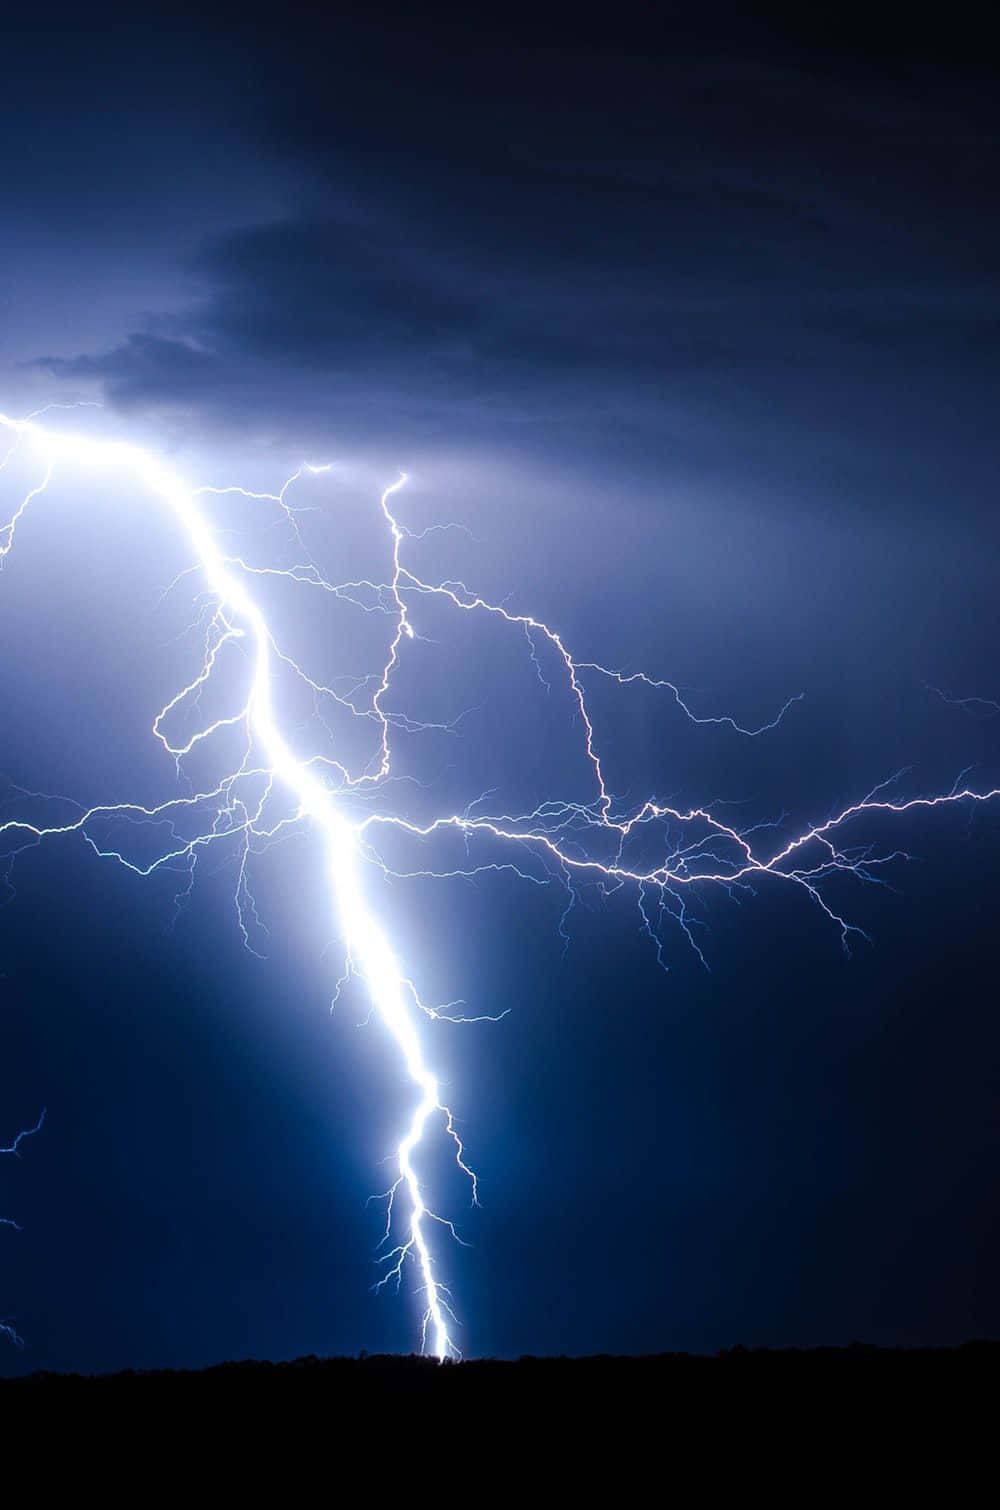 Image  Stunning Blue Lightning Bolt Across the Sky Wallpaper